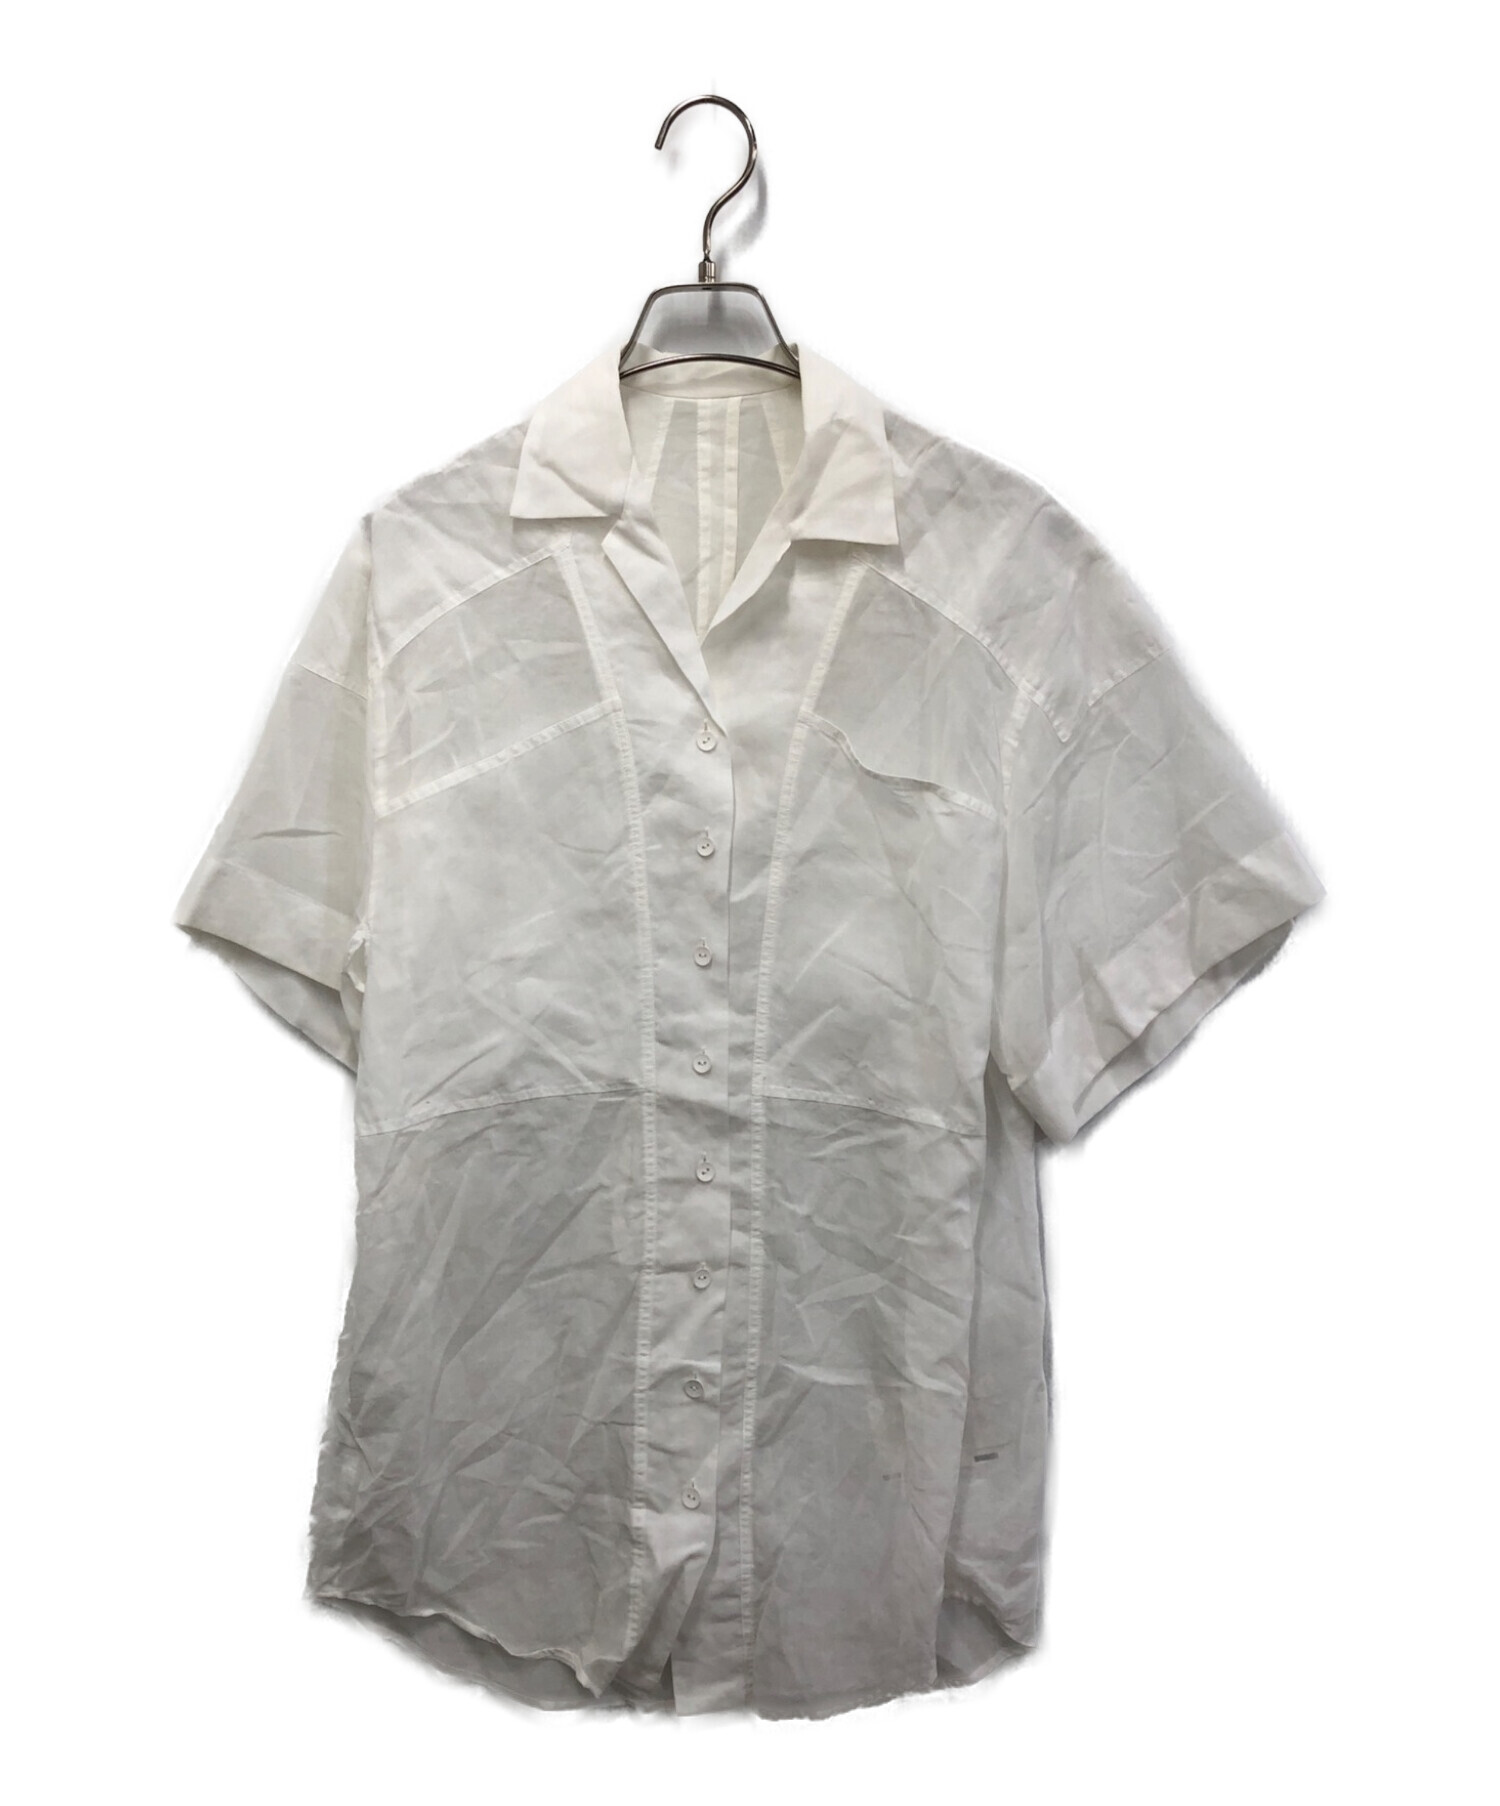 IRENE (アイレネ) Cotton Boil Shirt ホワイト サイズ:36